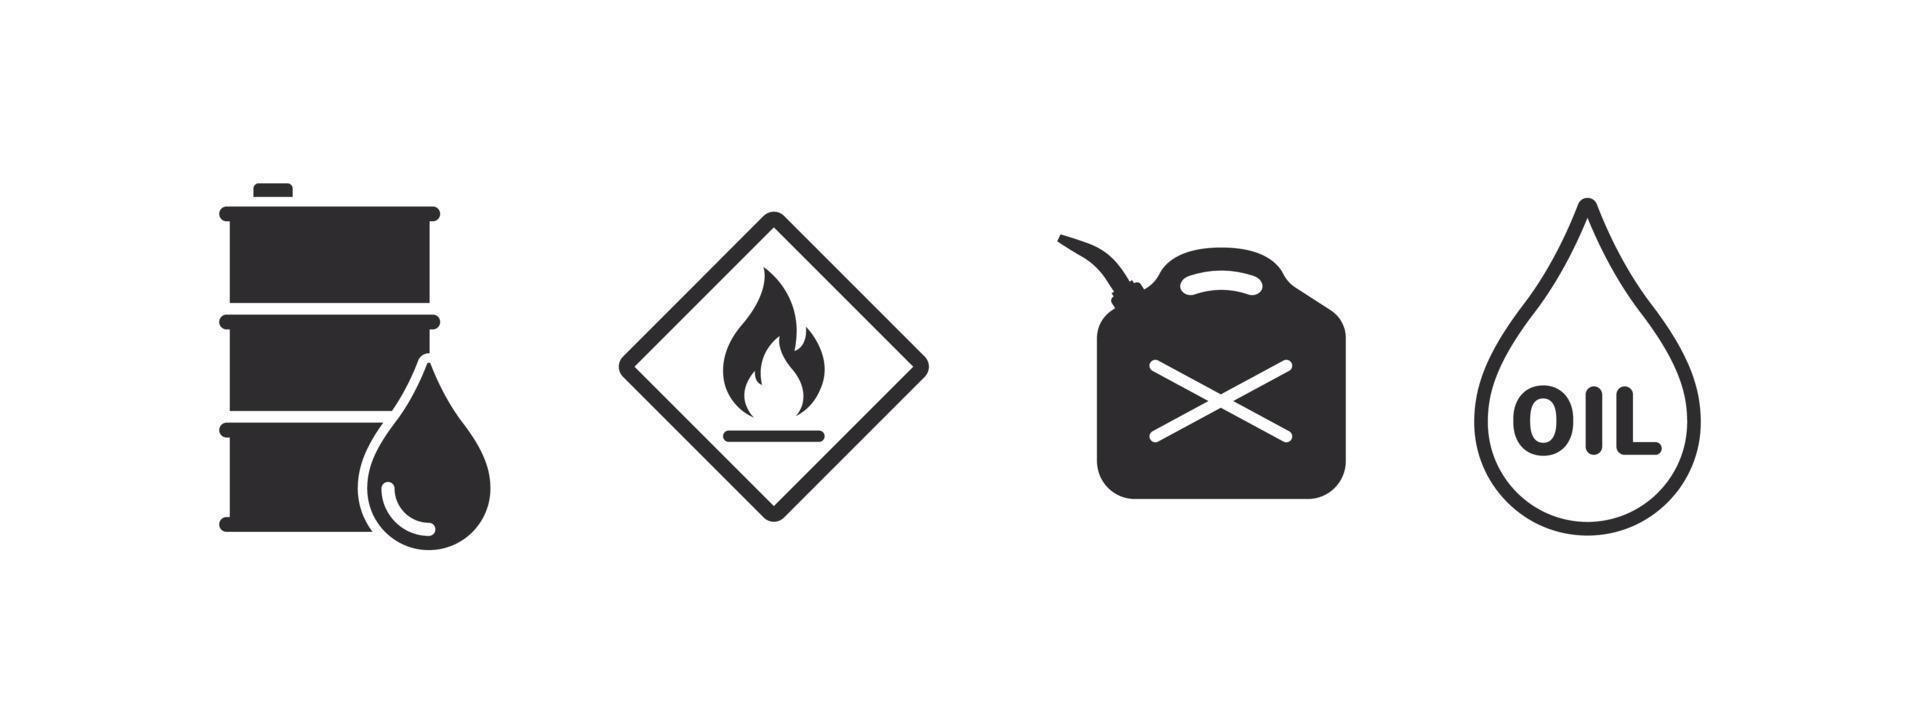 carburante icone. carburante serbatoio icona, fuoco rischio icona. icone di olio carburante. vettore illustrazione